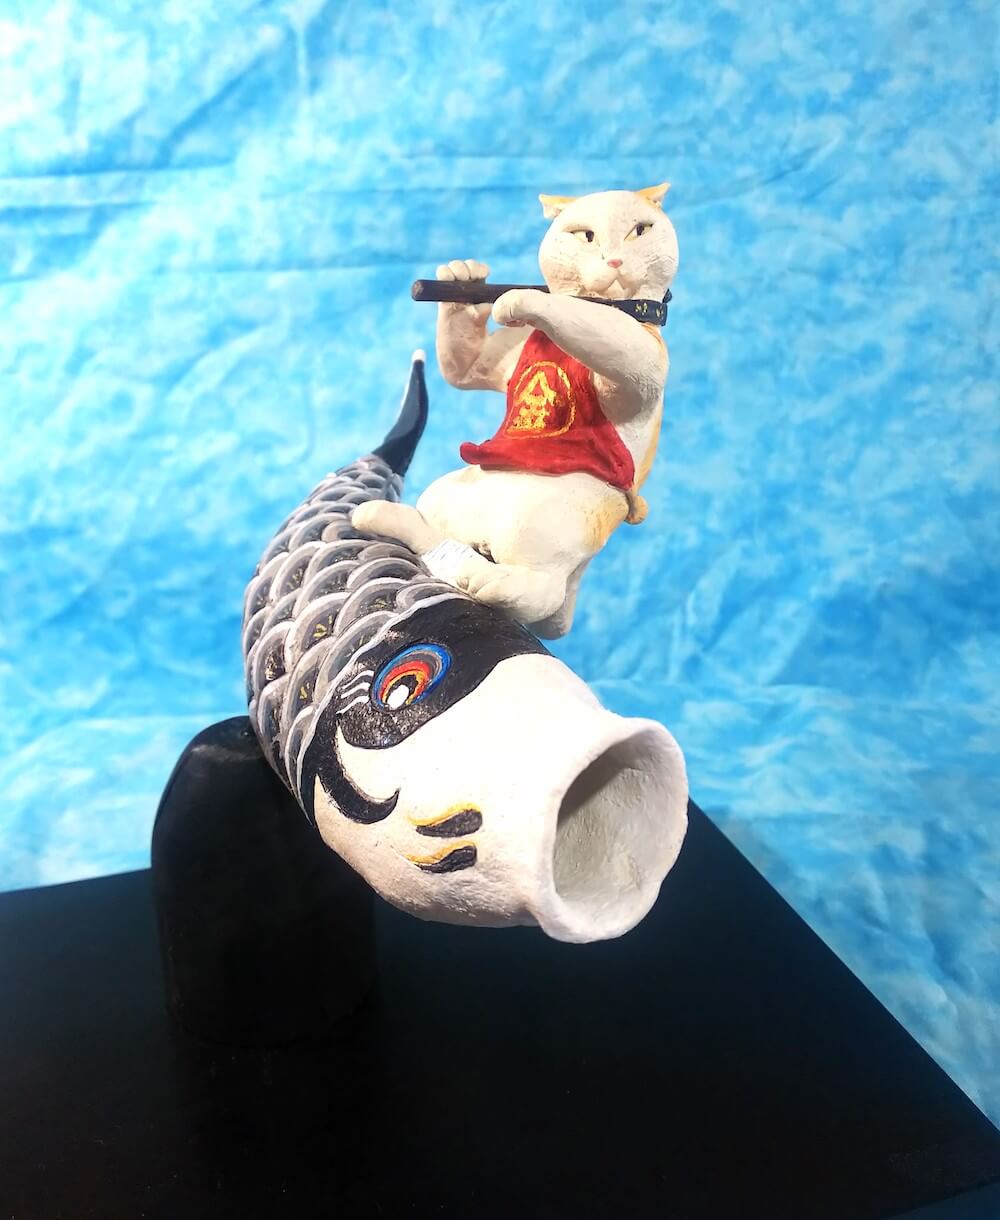 鯉のぼりを乗りこなす猫の置物「サーフィング金太郎」 by ネコロジックアーツ